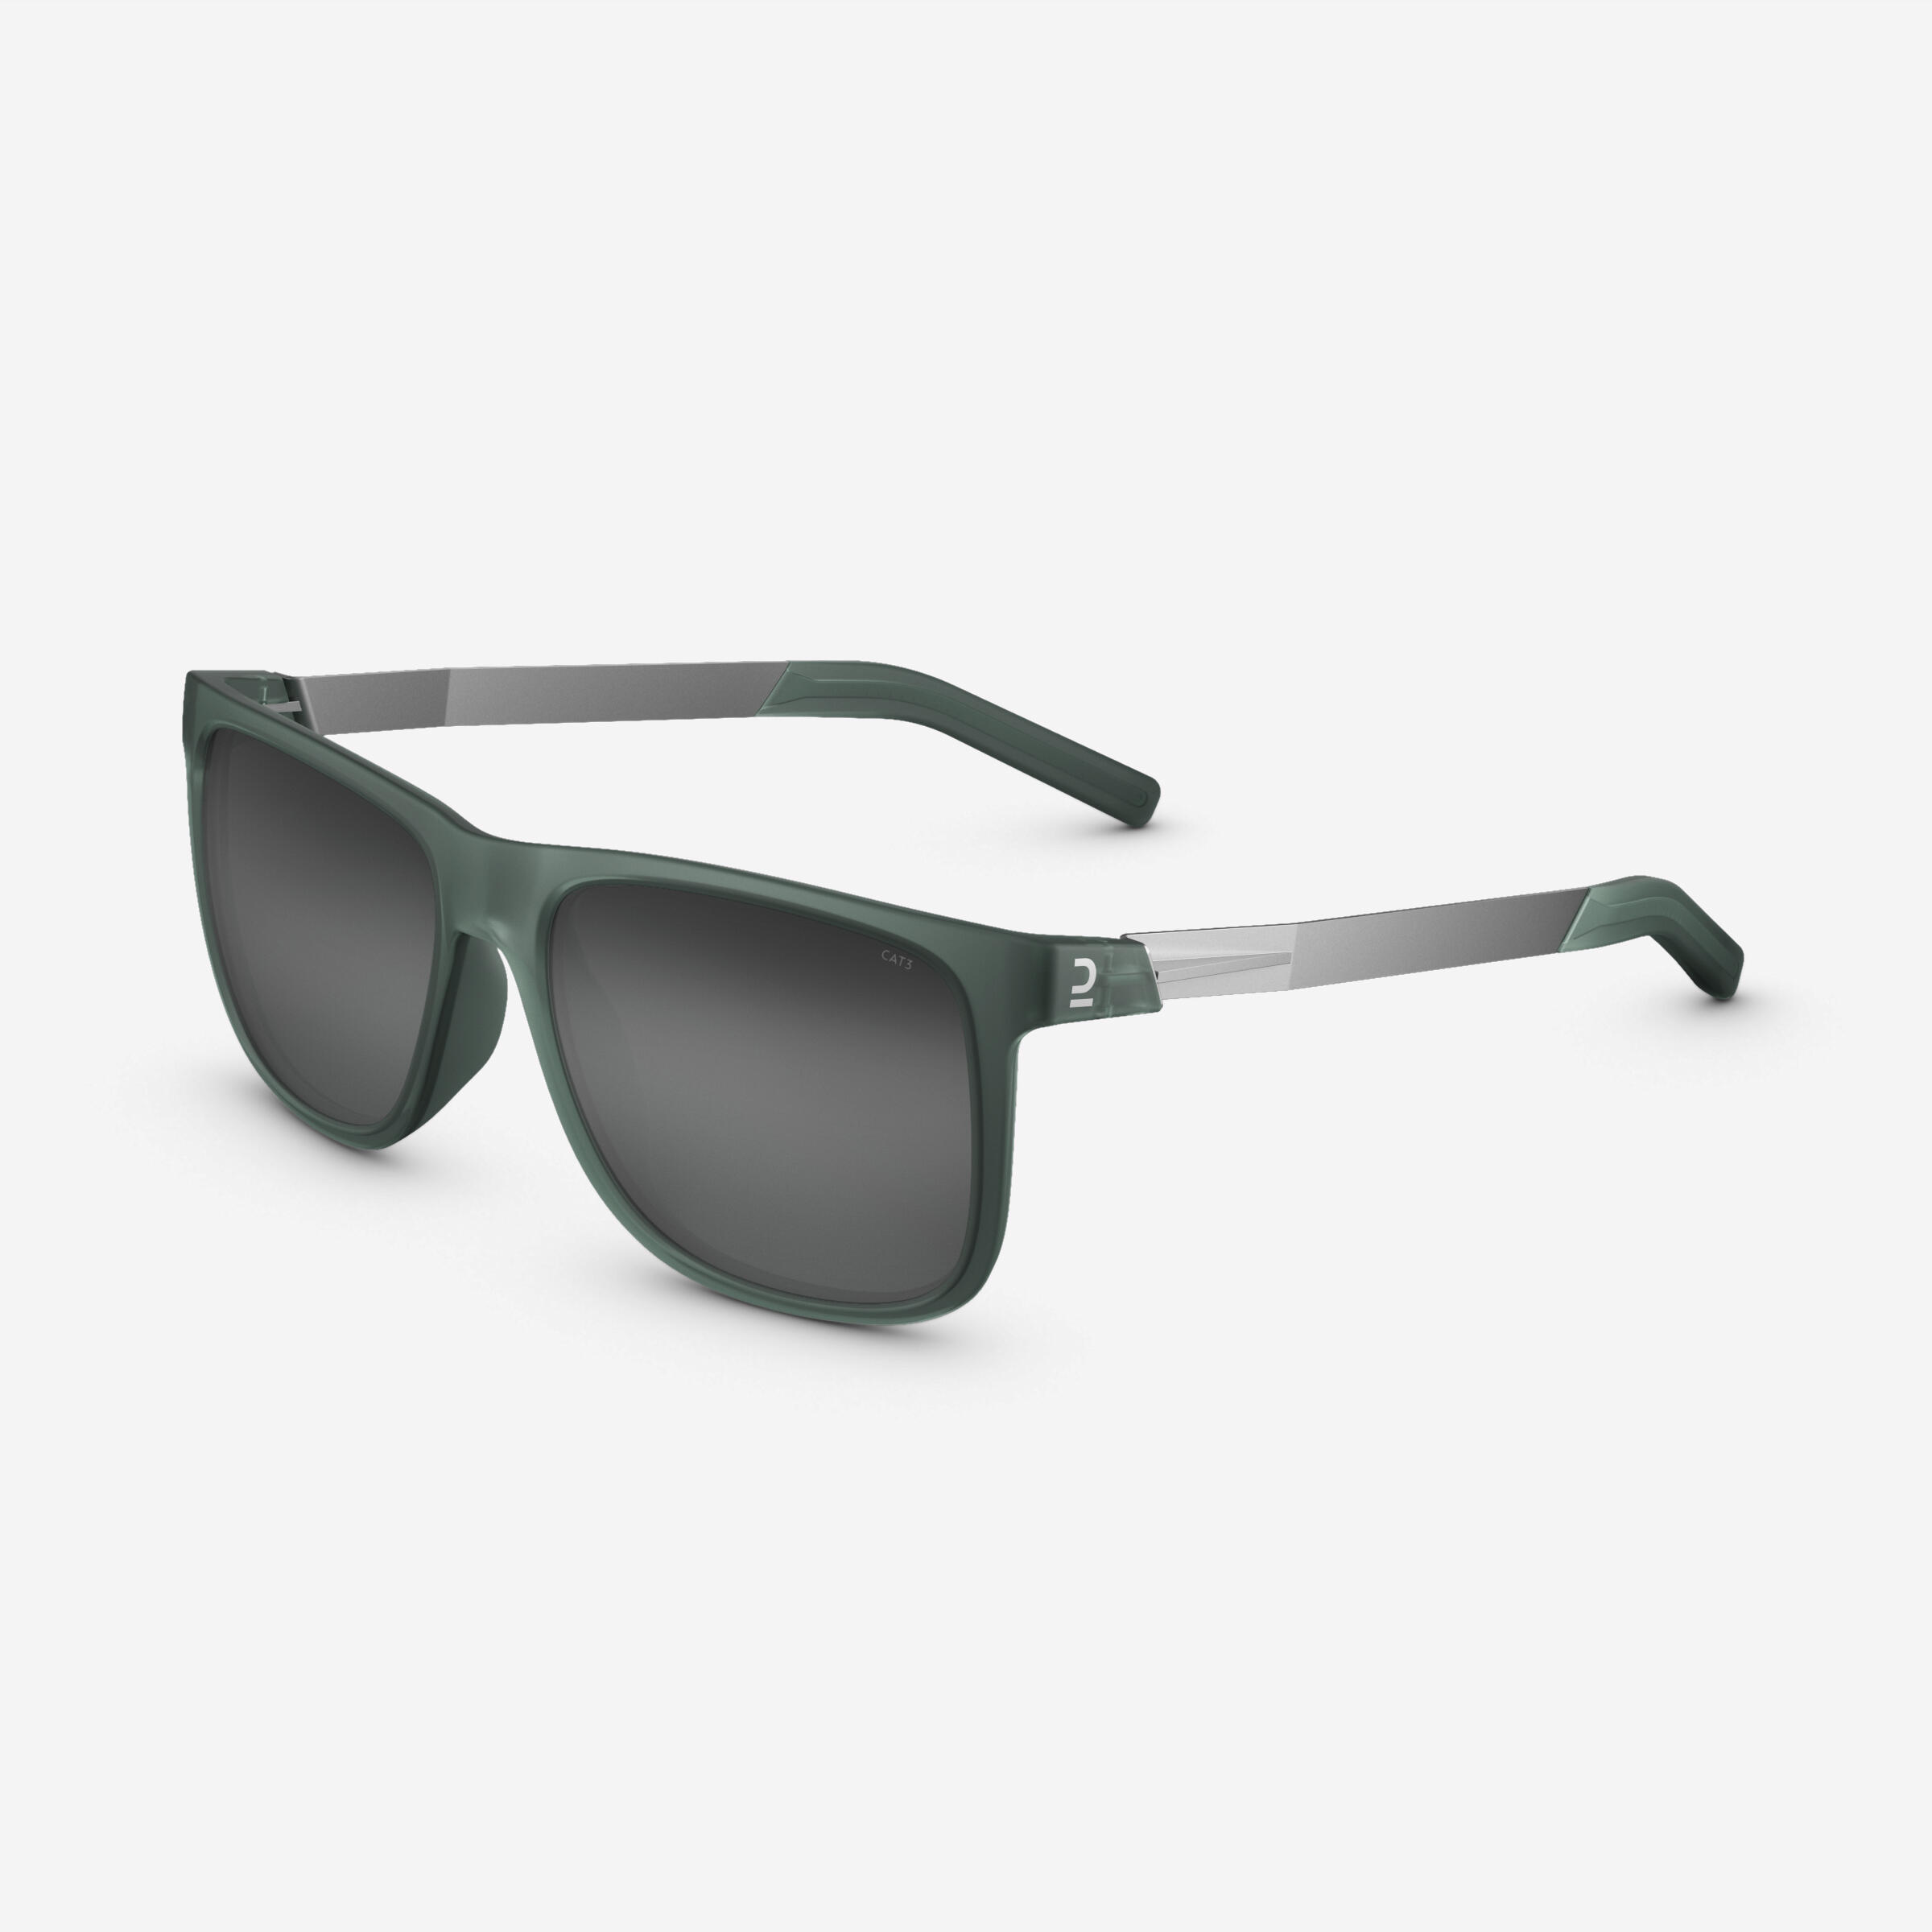 Sunglasses MH 140 Premium Cat 3 - Green 1/9